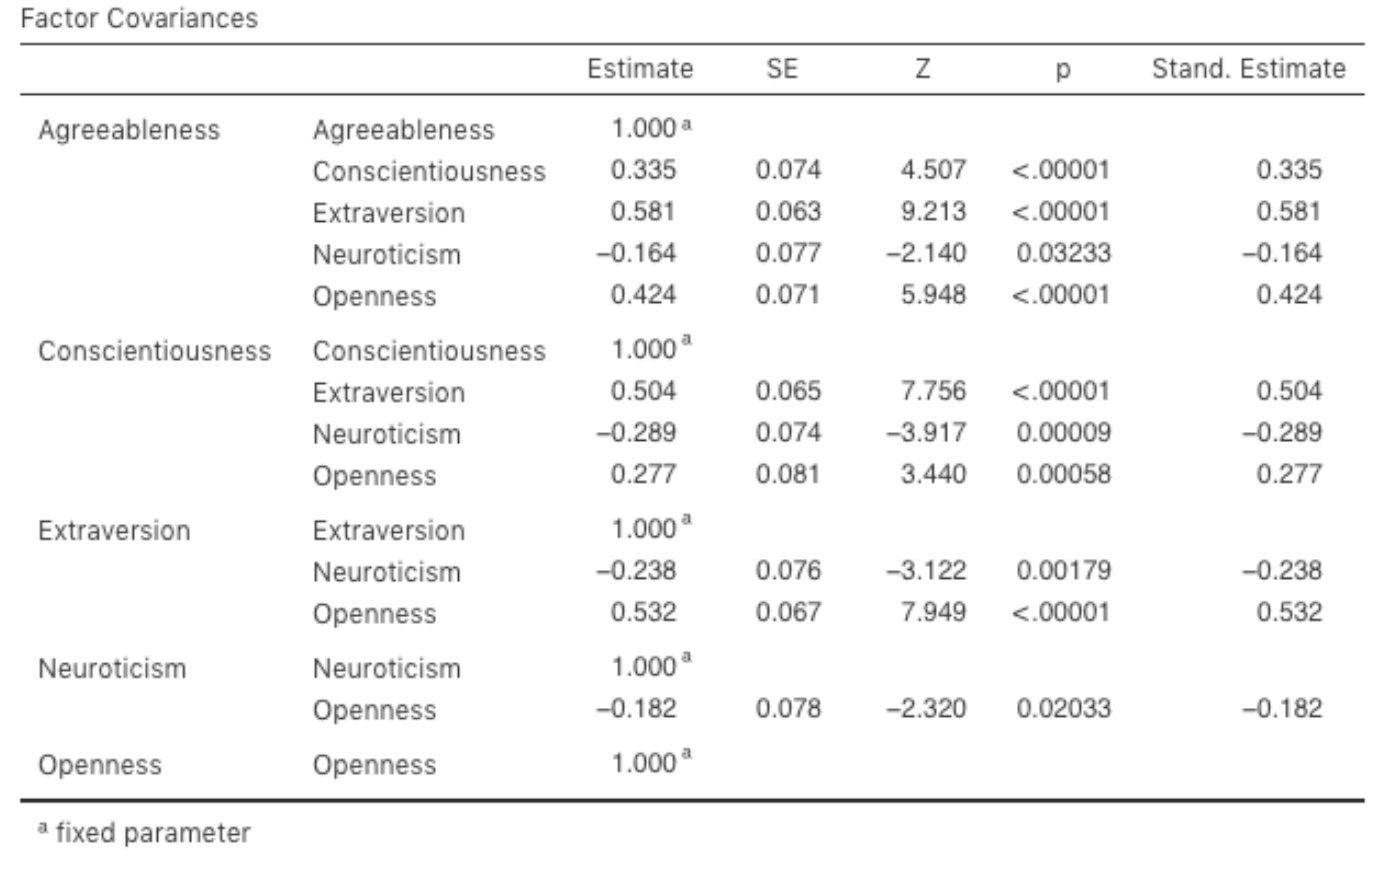 Tabelle mit den ``Factor Covariances`` für das definierte CFA-Modell in jamovi